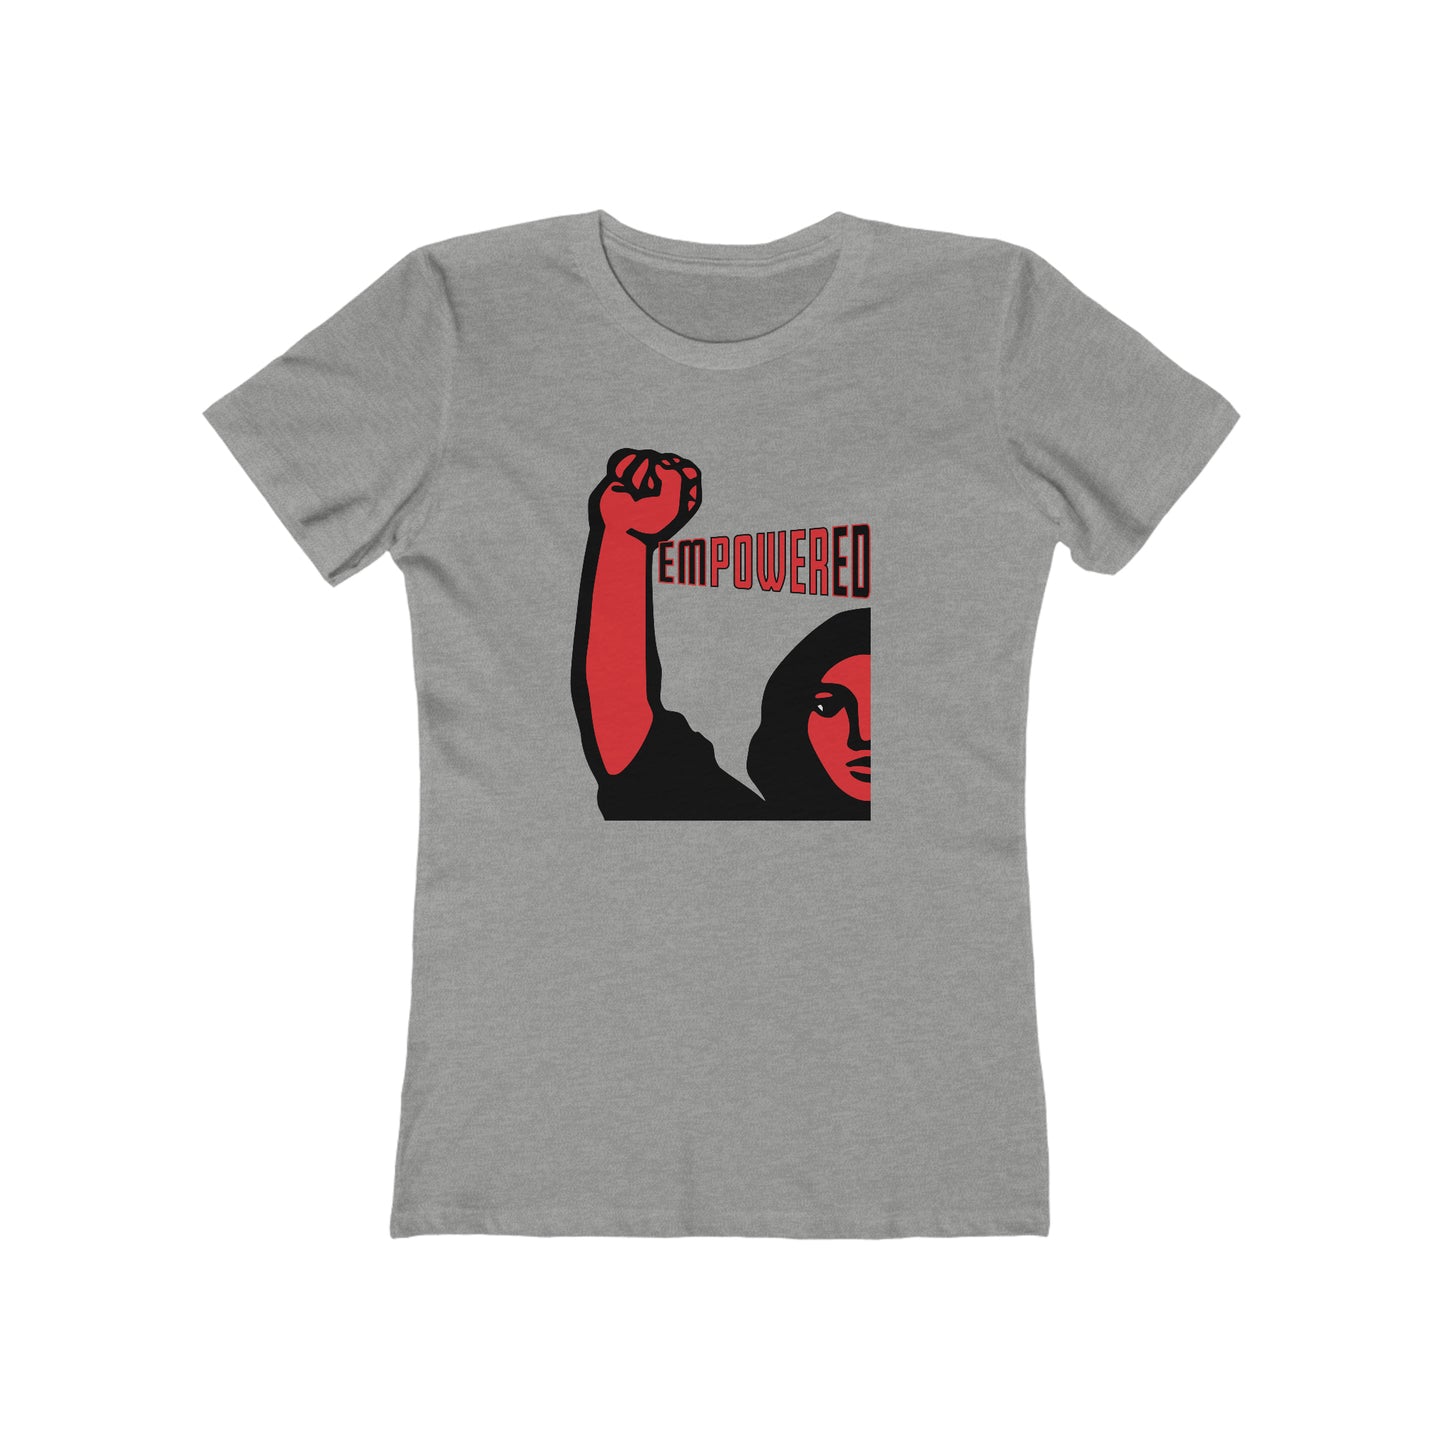 Empowered Women - Women's T-Shirt